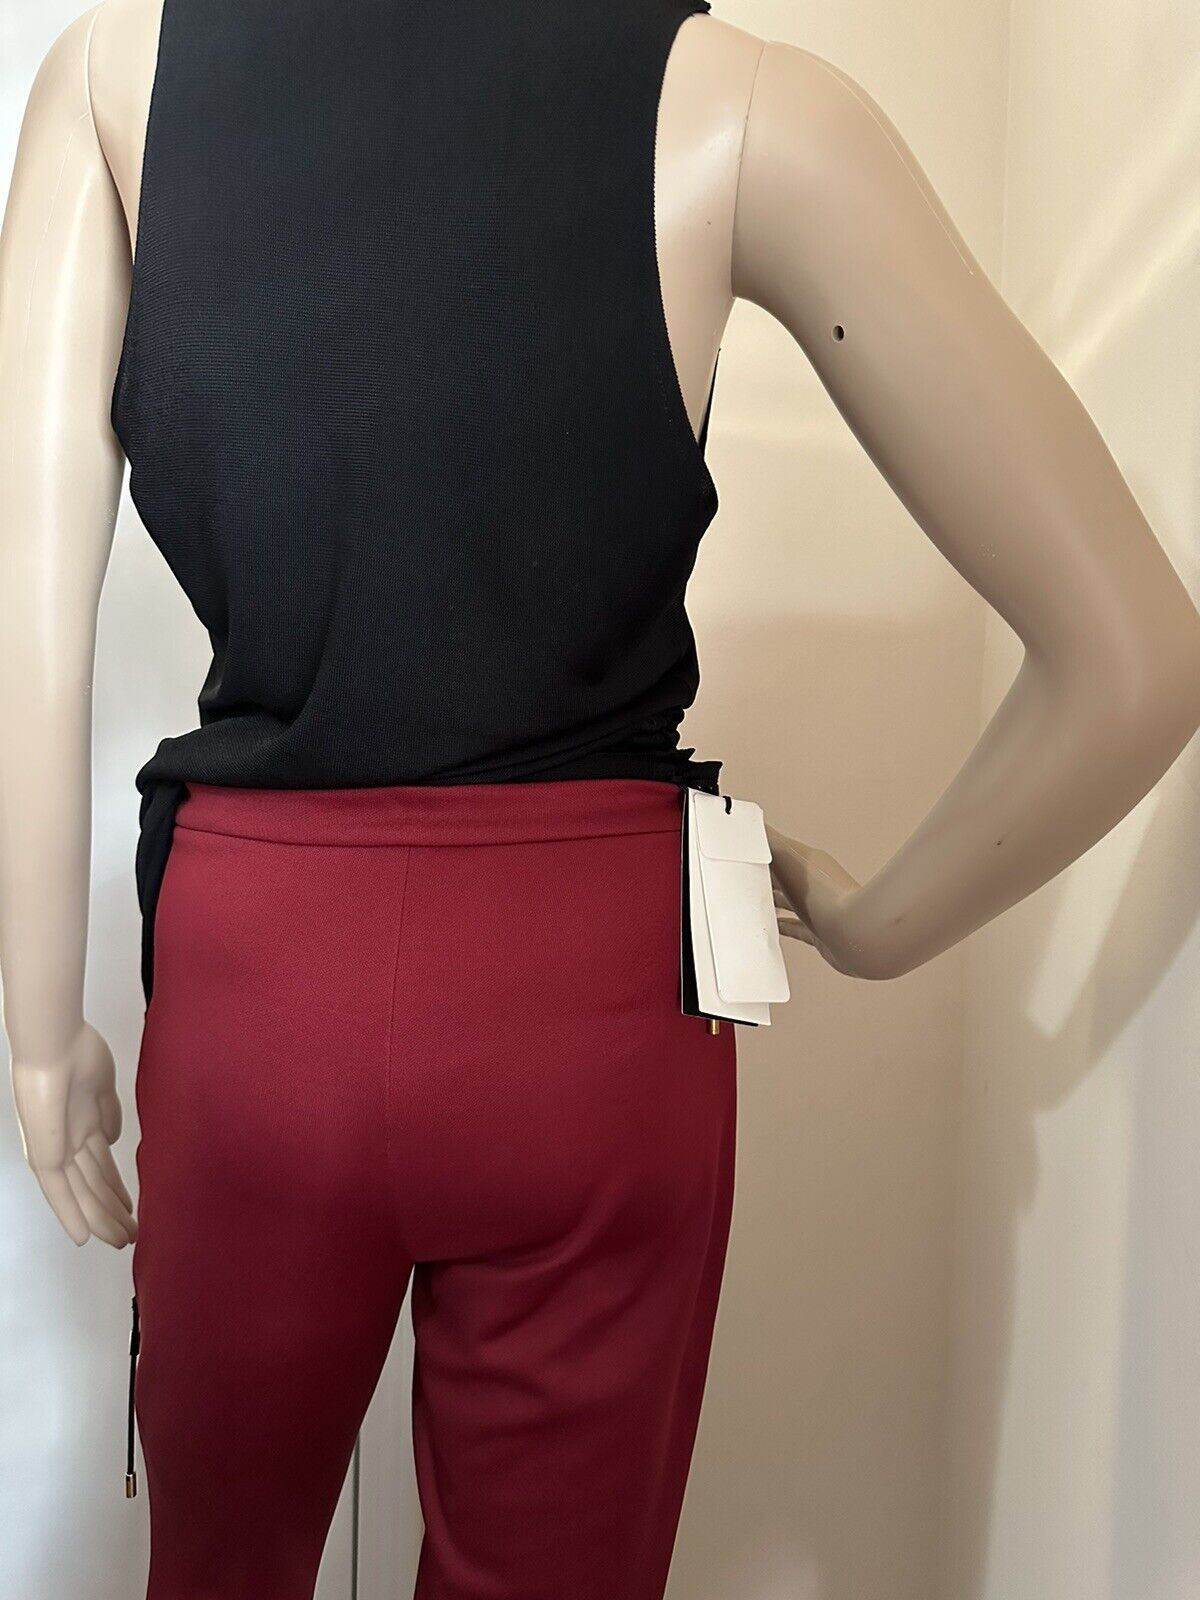 Neue Gucci Damen-Leggings aus technischem Jersey für 1200 $, Burgunderrot, Größe S